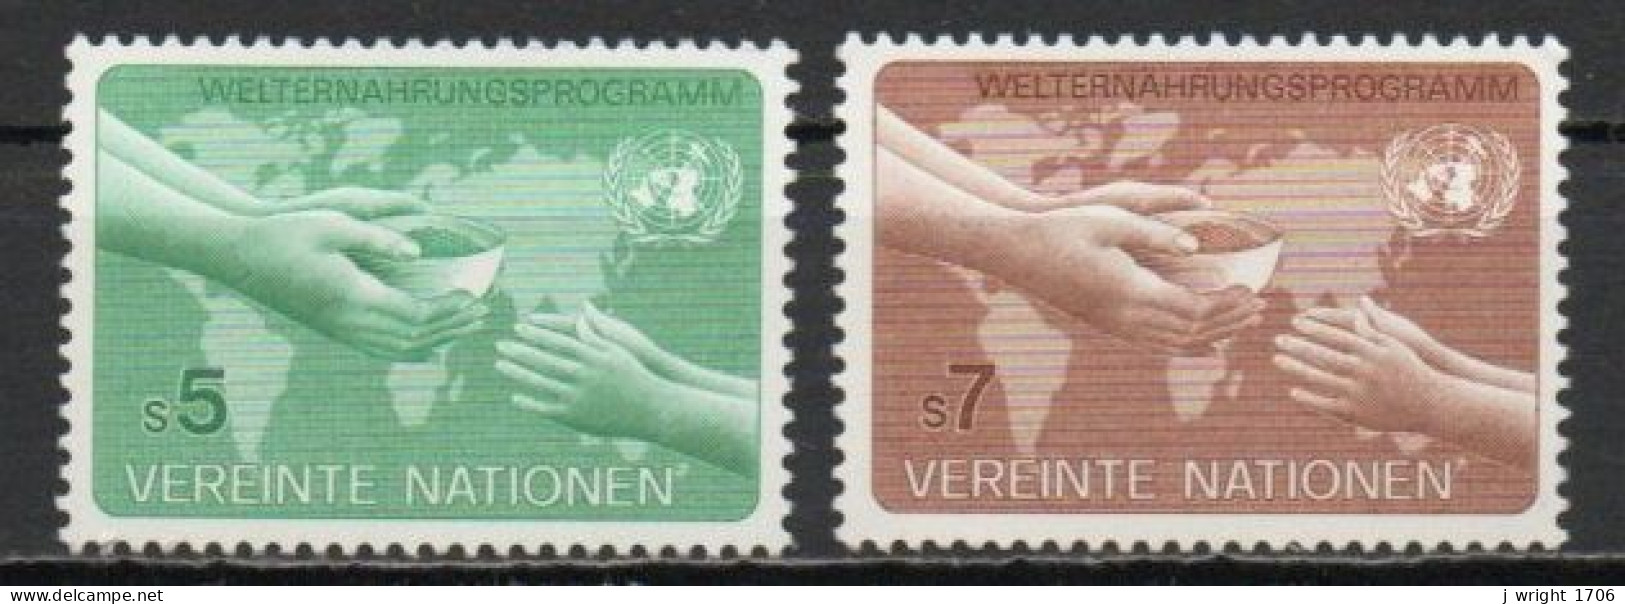 UN/Vienna, 1983, World Food Programme, Set, MNH - Ungebraucht